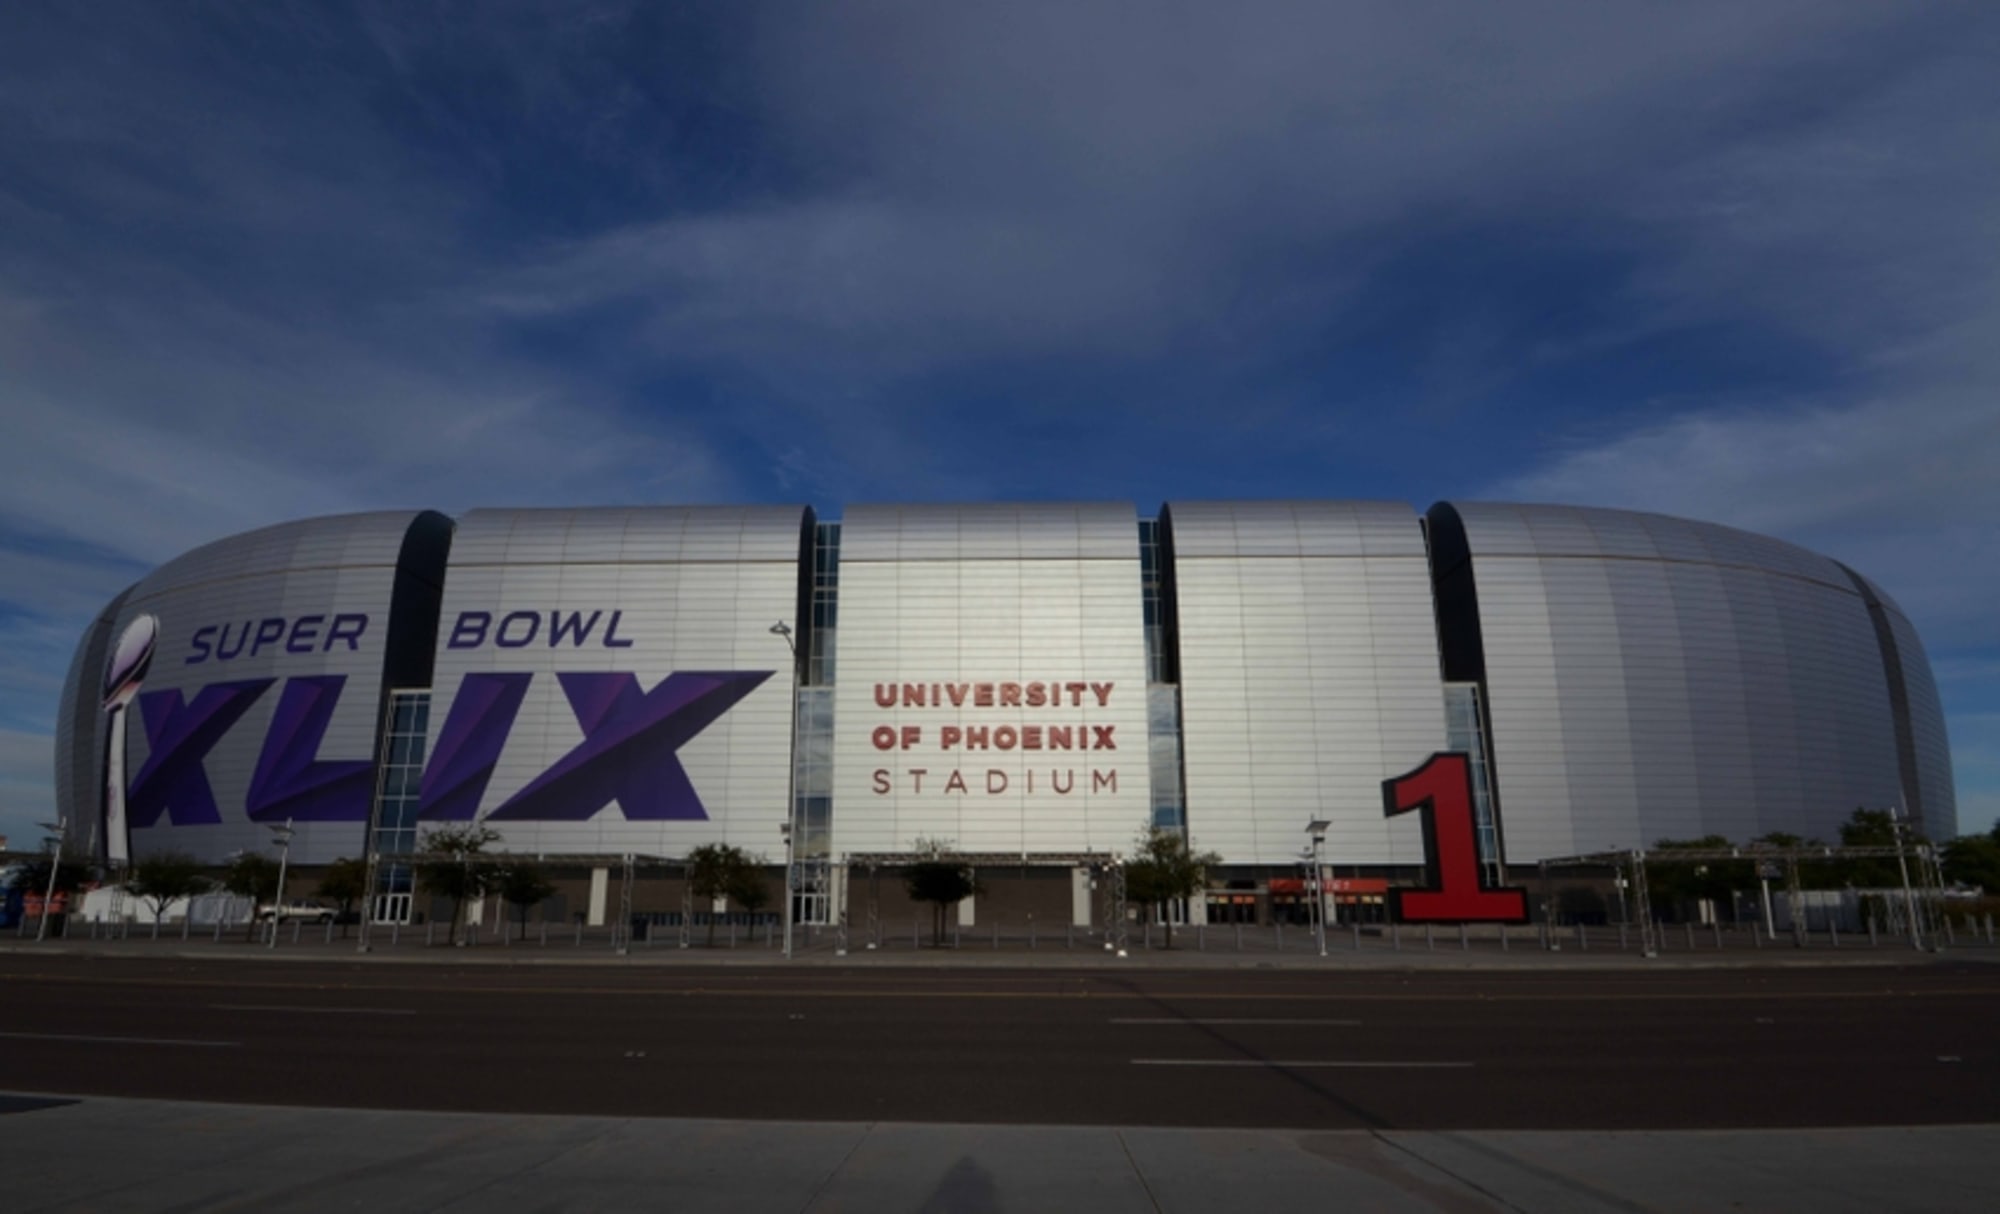 Each team's blueprint for winning Super Bowl XLIX